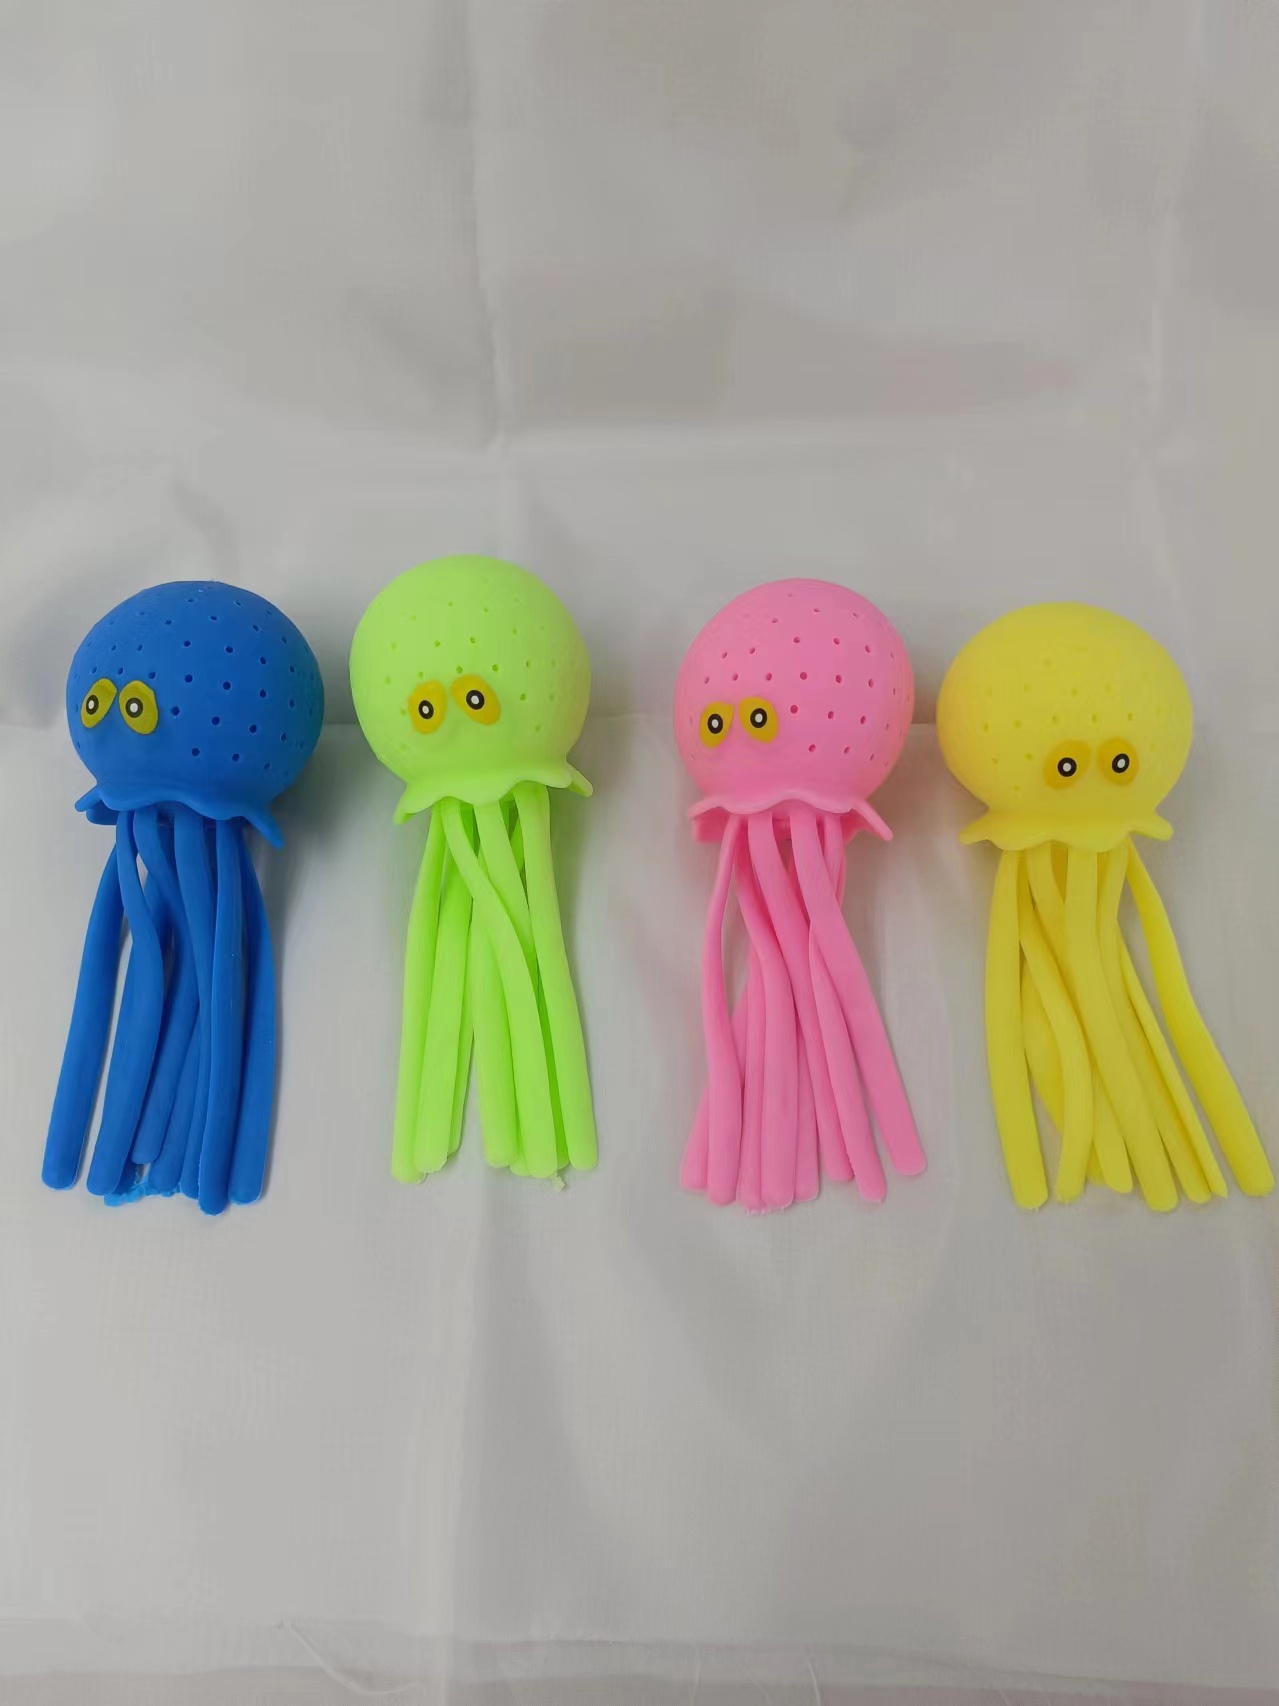 创意新奇特儿童玩具 戏水玩具喷水章鱼安全无毒材质环保色彩鲜艳